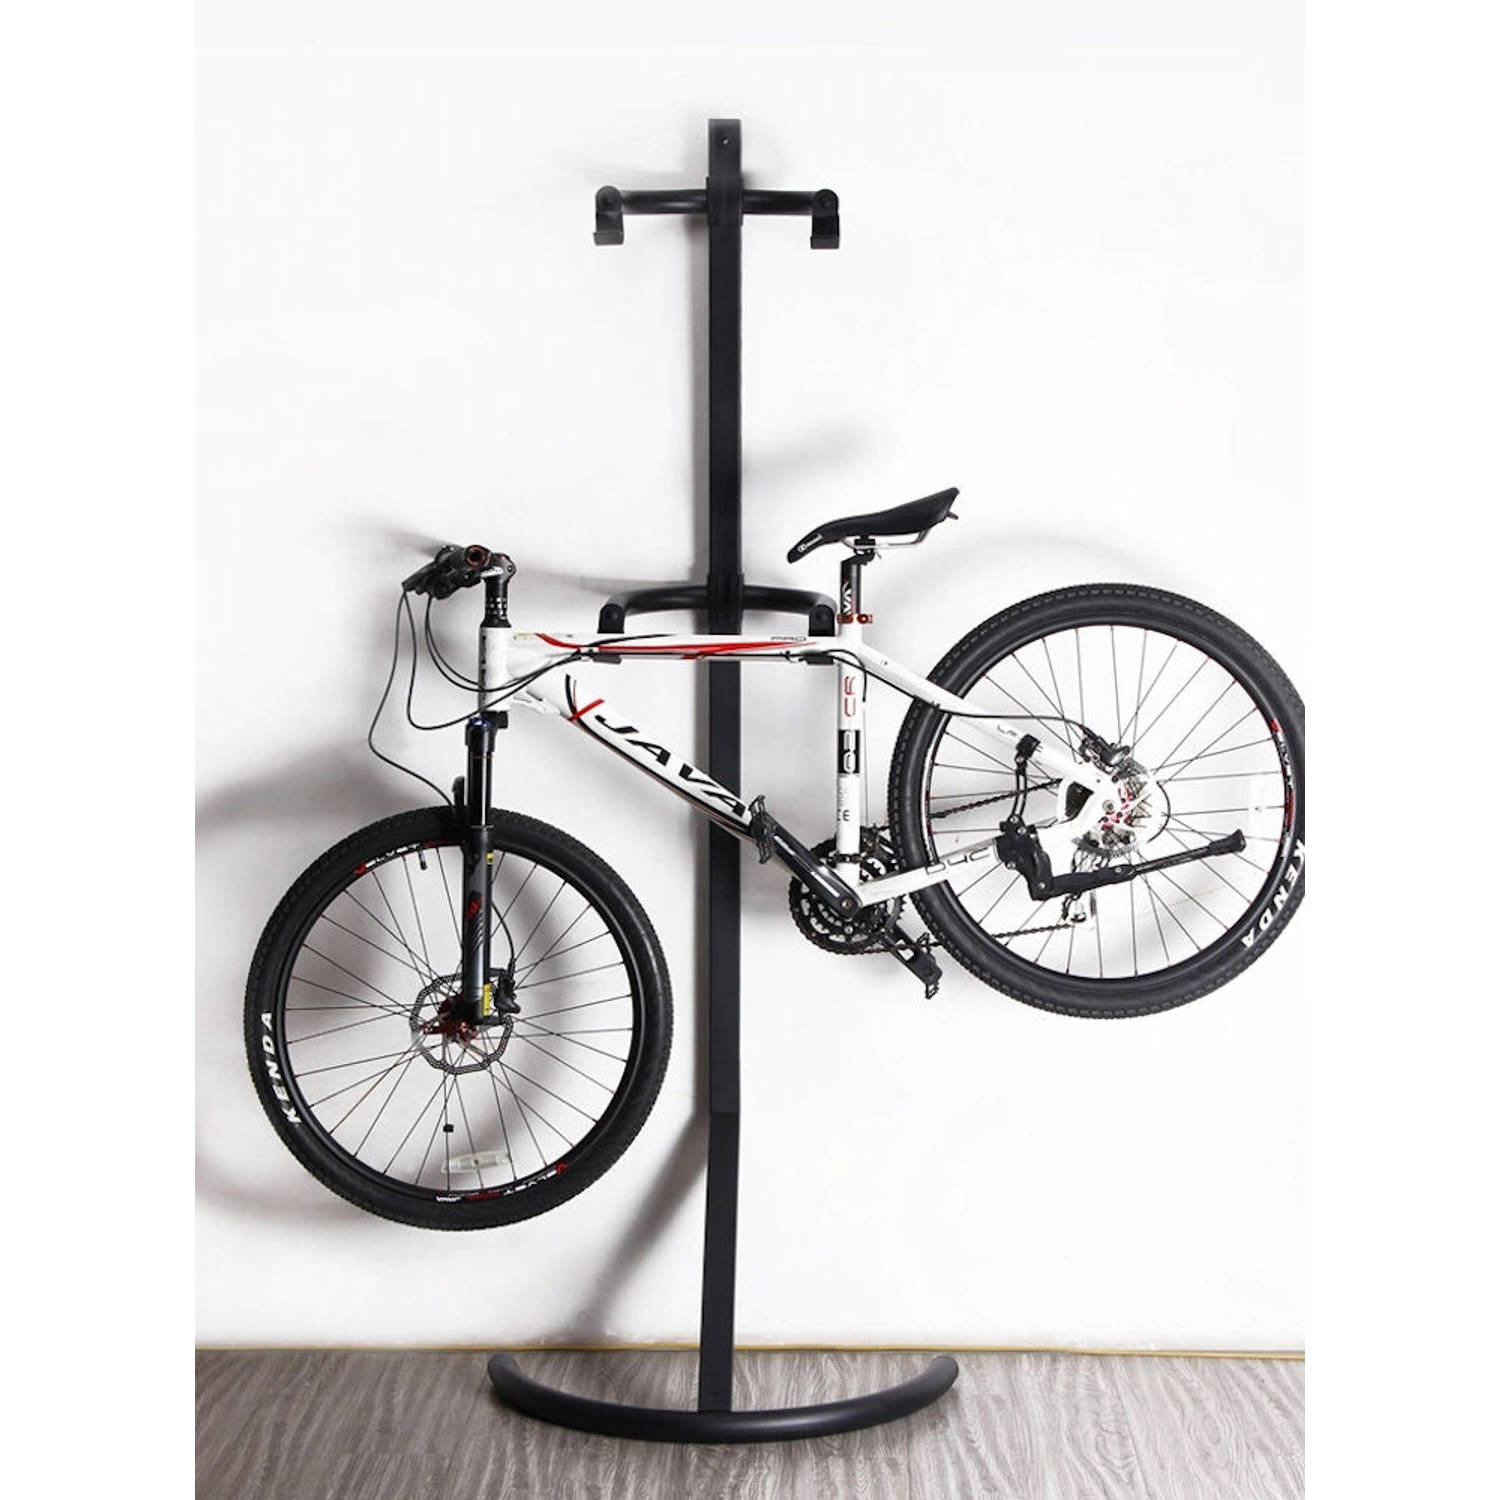 Scheiding entiteit Onbevredigend Sterk Staand Fietsenrek om 2 fietsen op te hangen - Eenvoudig Compact |  Blokker